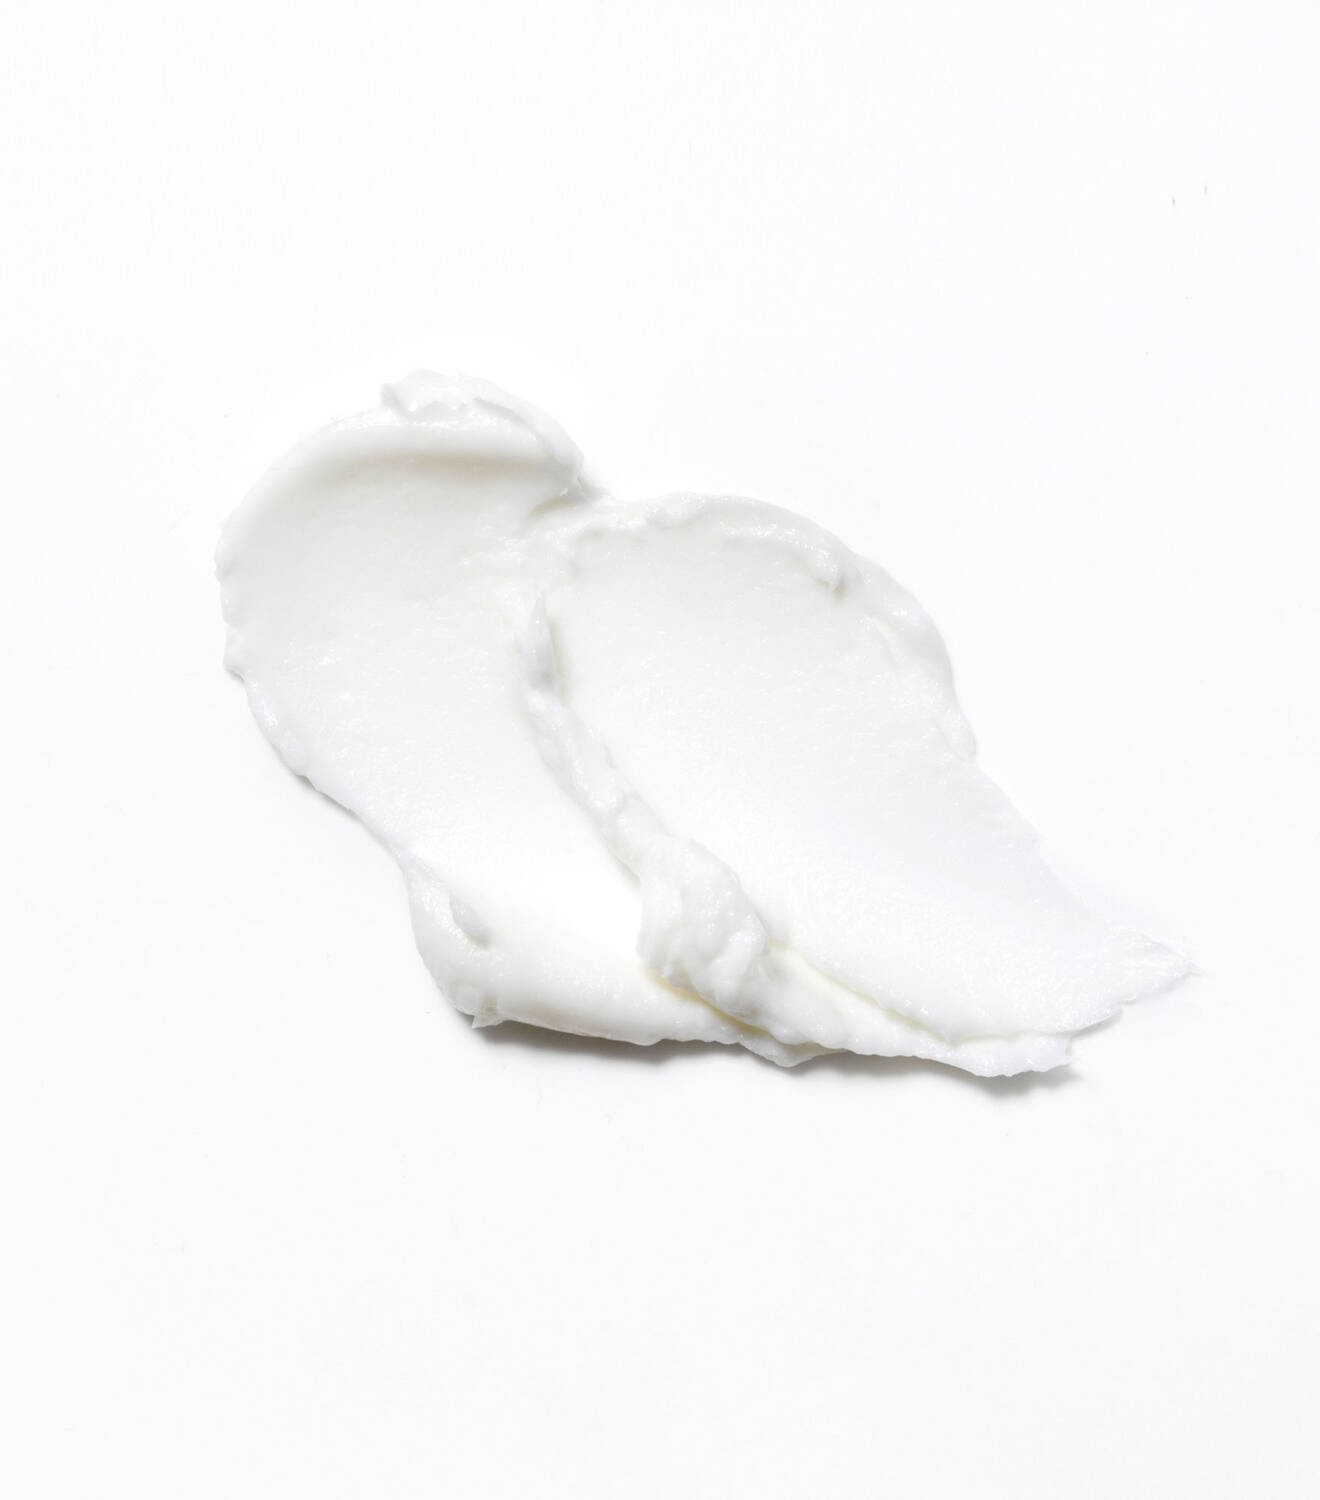 Centella Sensitive Cica Cream